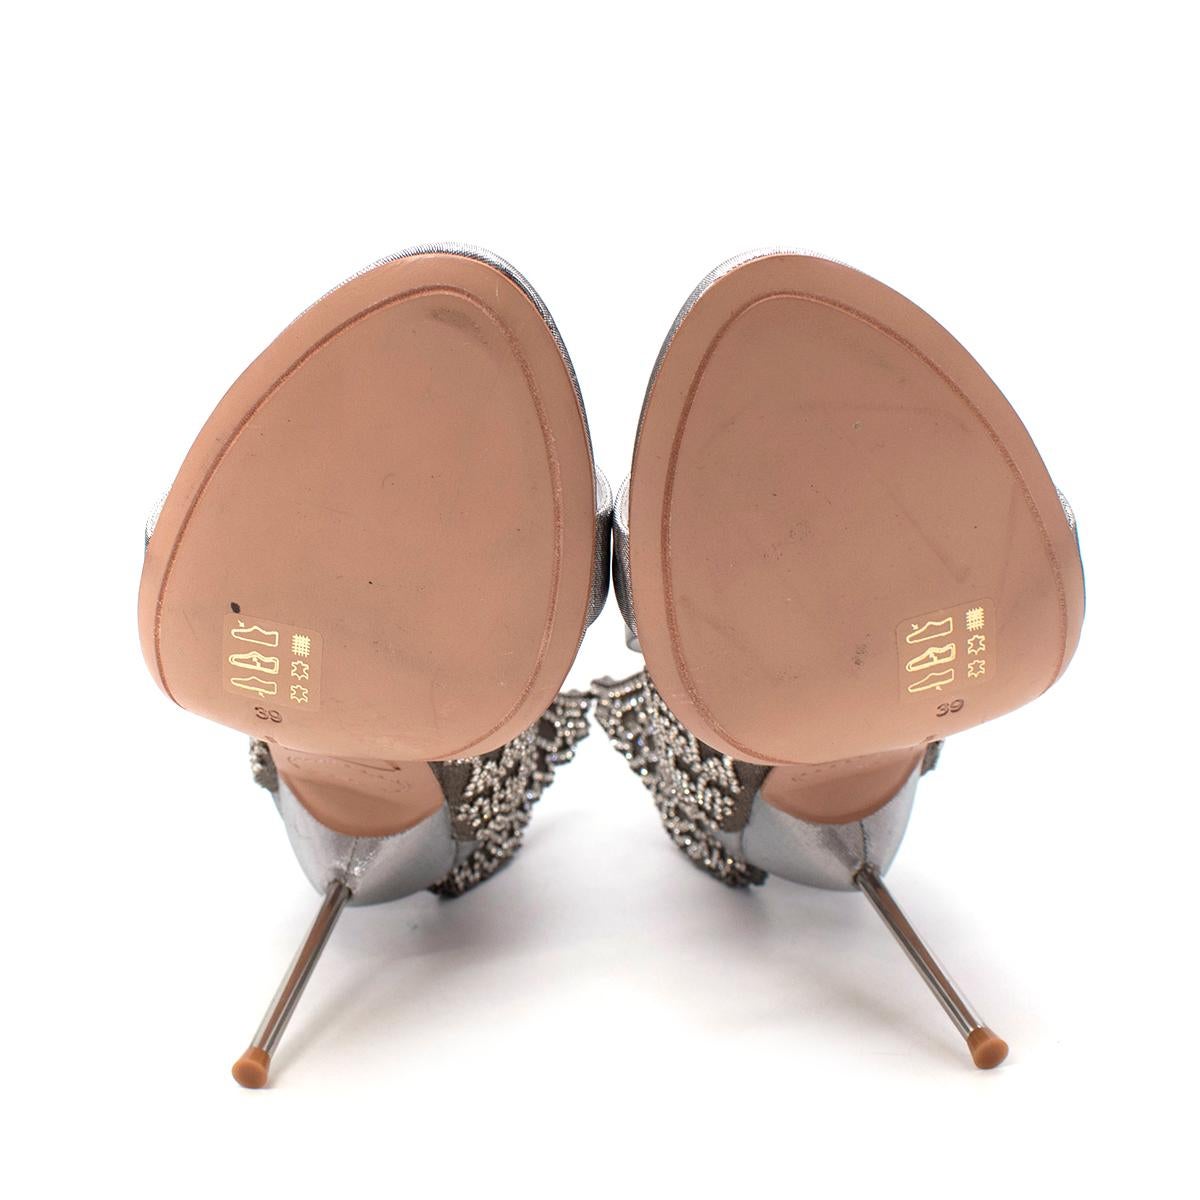 Sophia Webster Silver Evangeline Butterfly 100 Sandals - US 8 For Sale 4